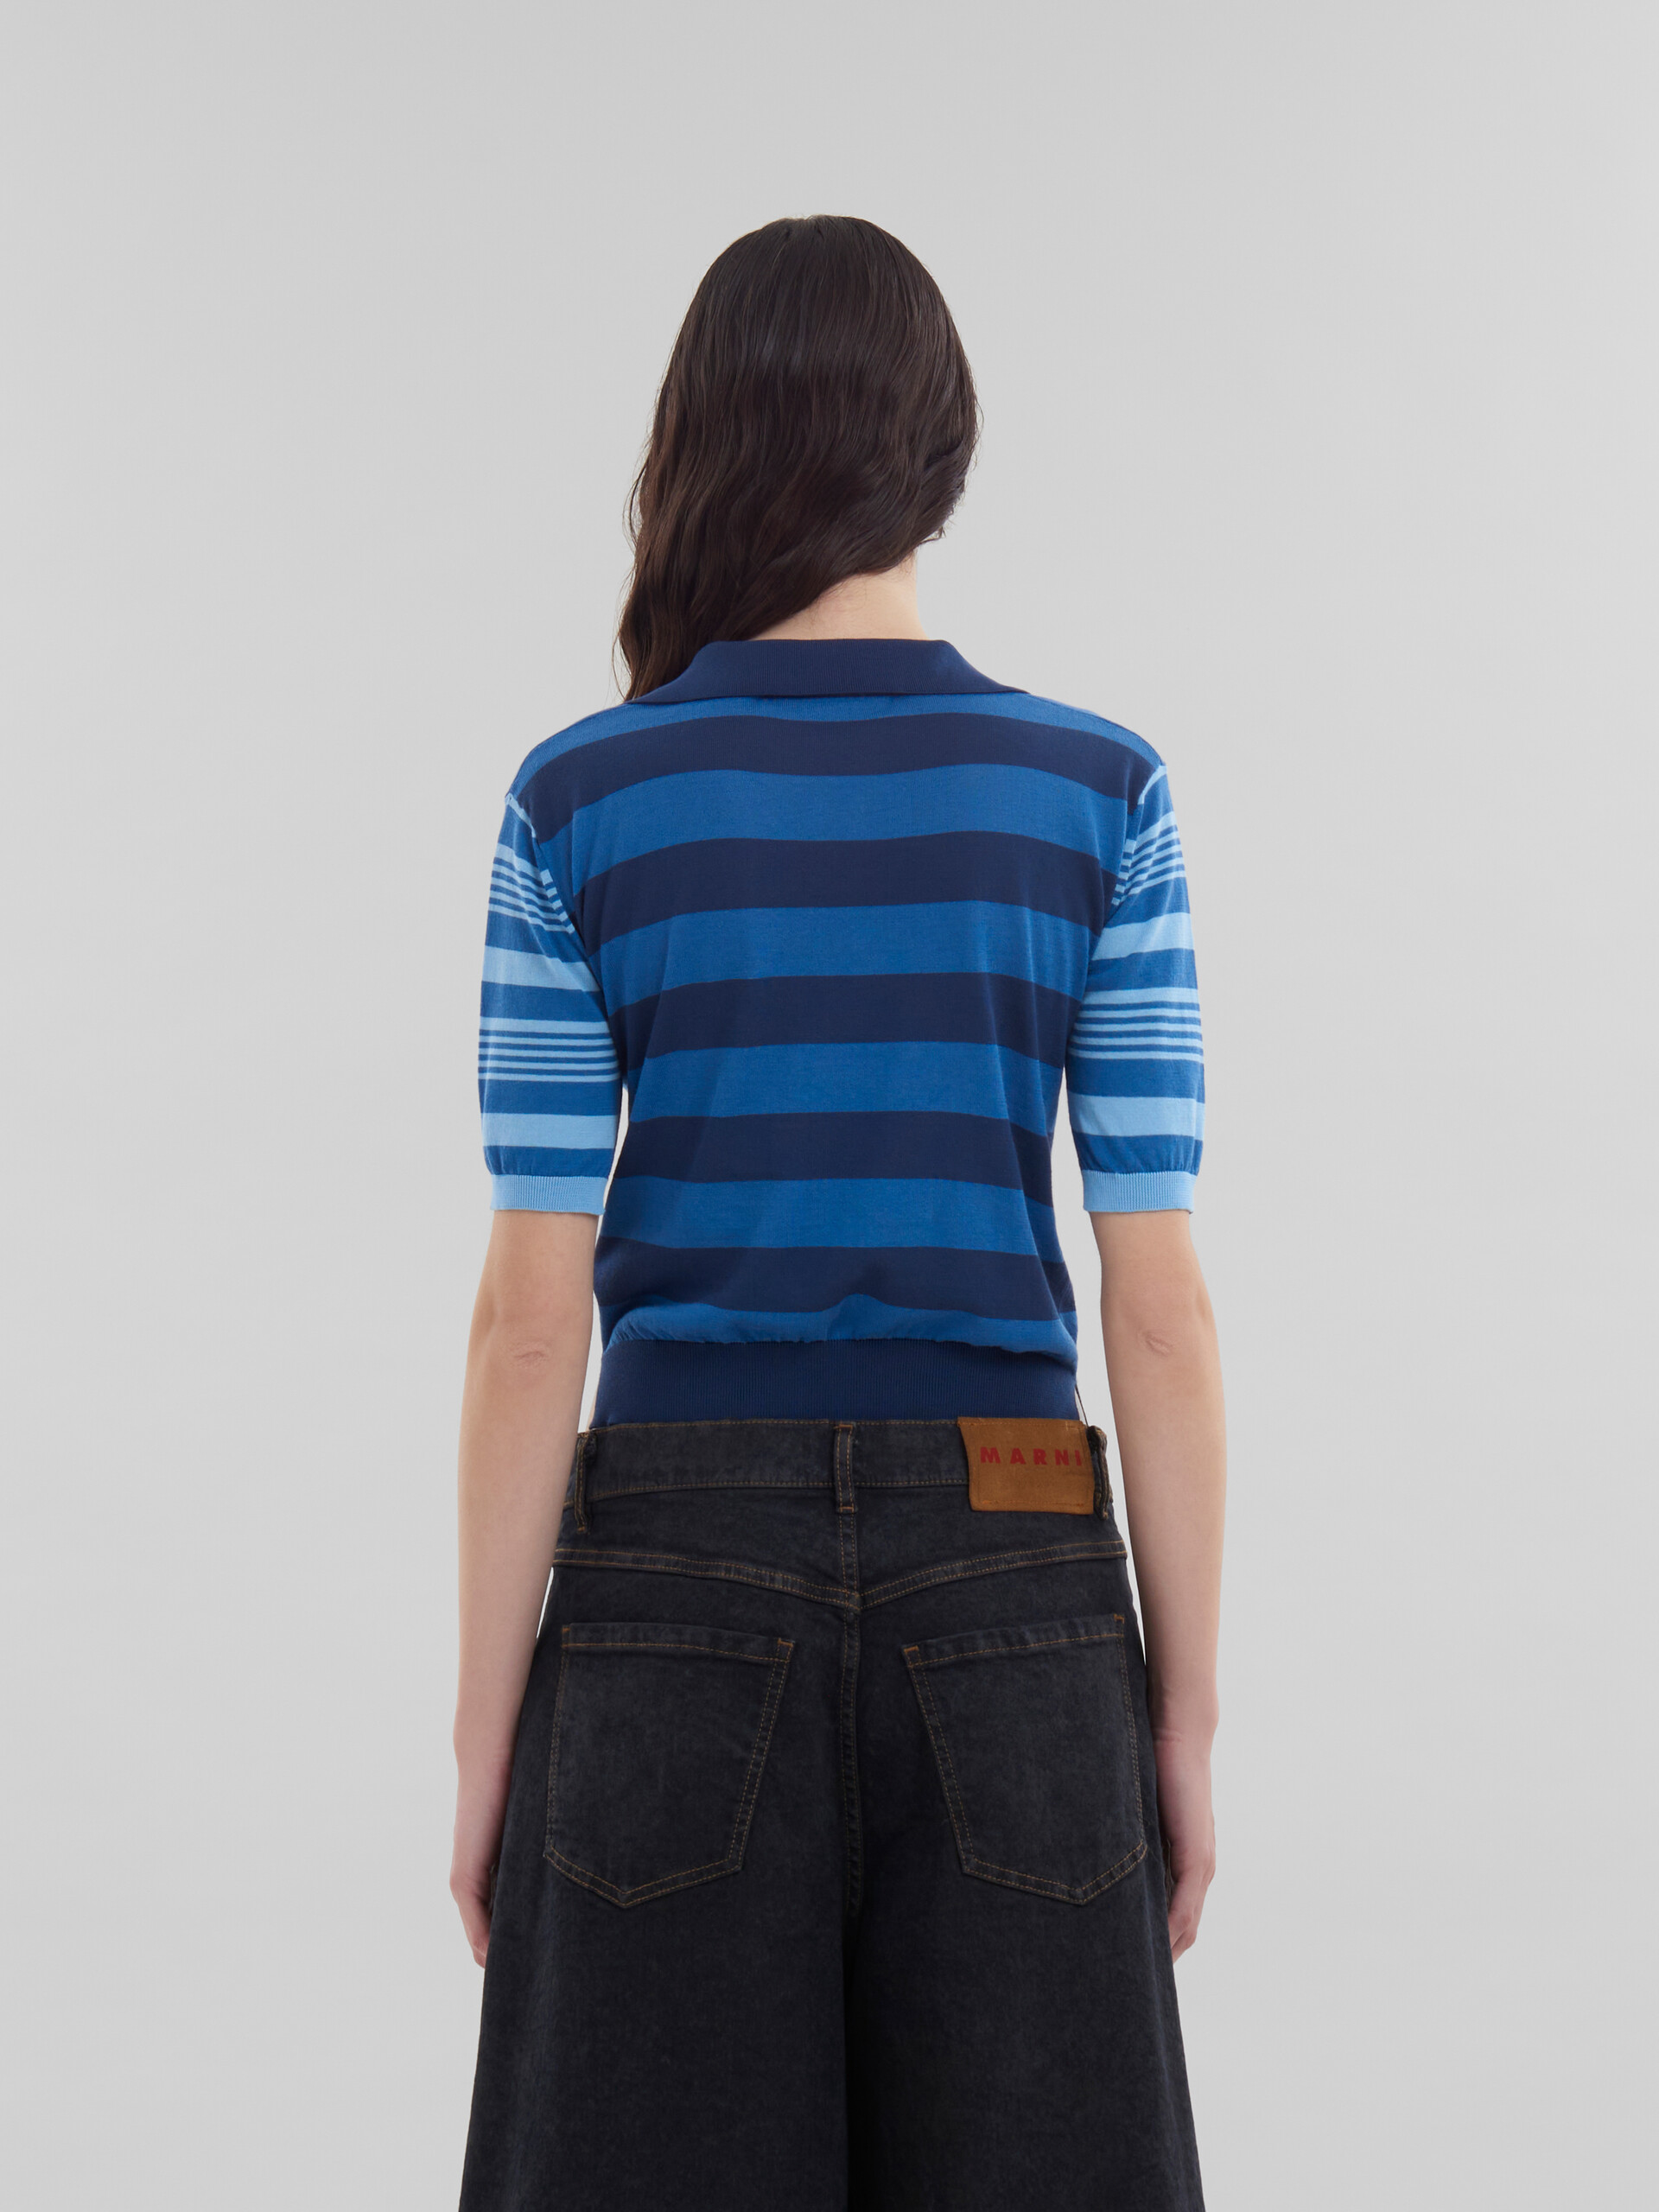 Maglione a maniche corte in cotone leggero con righe a contrasto blu - Camicie - Image 3